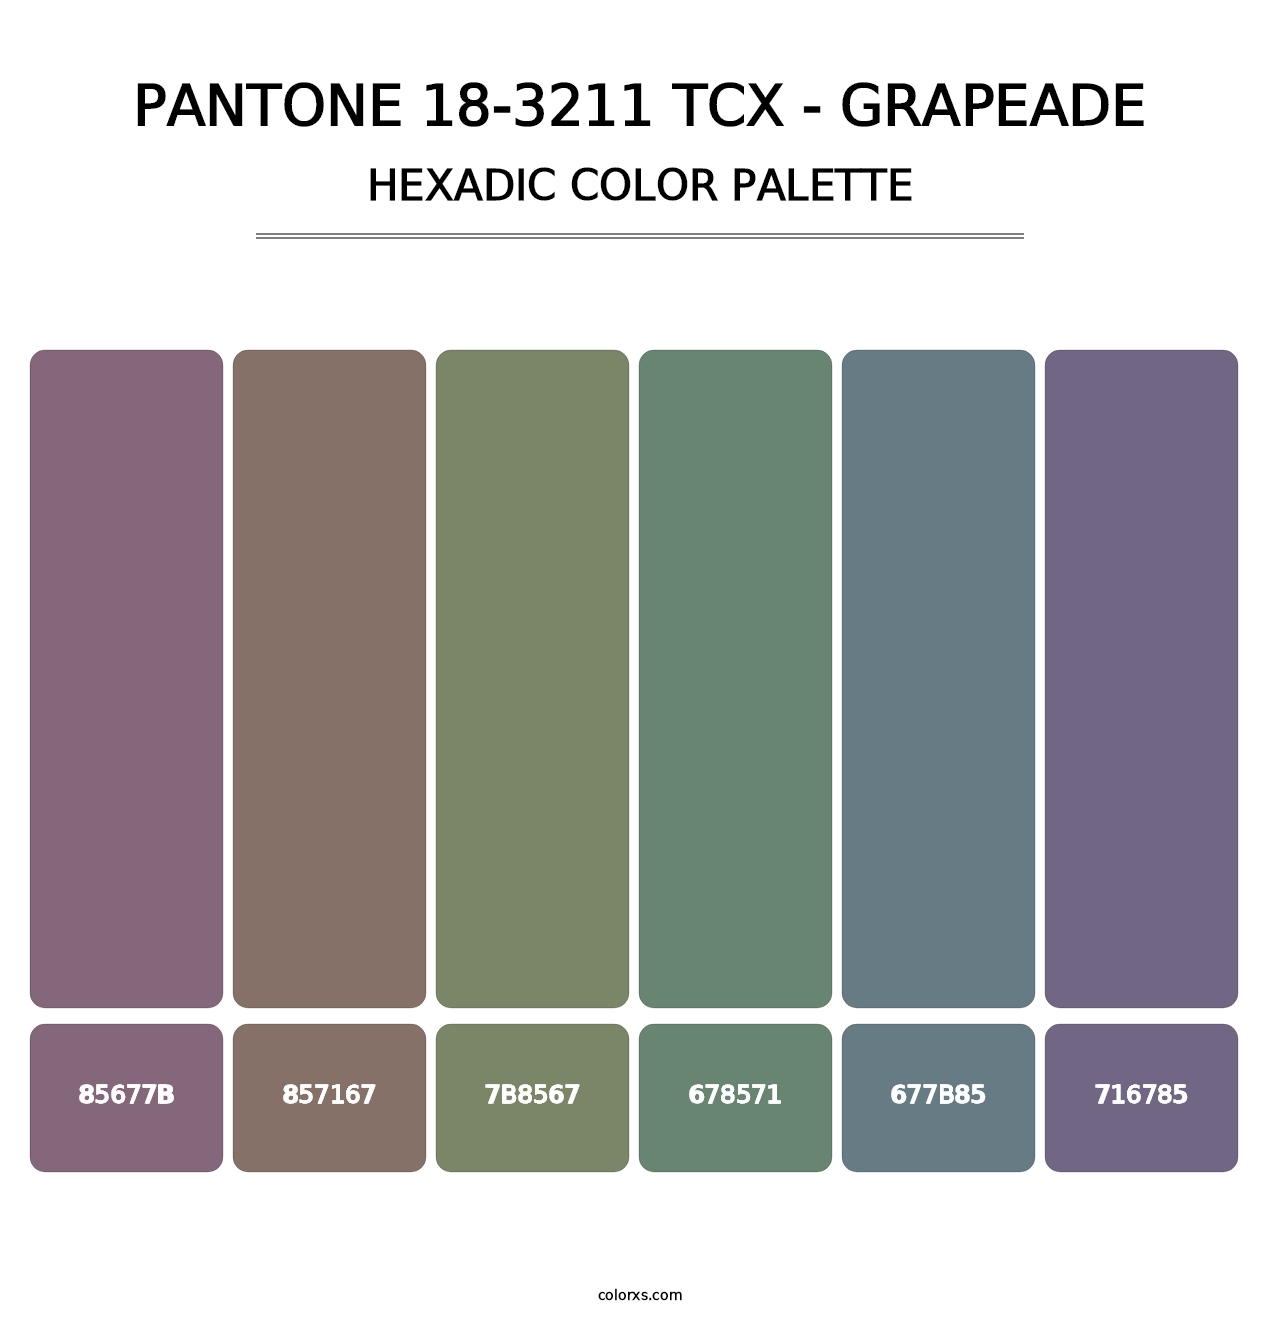 PANTONE 18-3211 TCX - Grapeade - Hexadic Color Palette